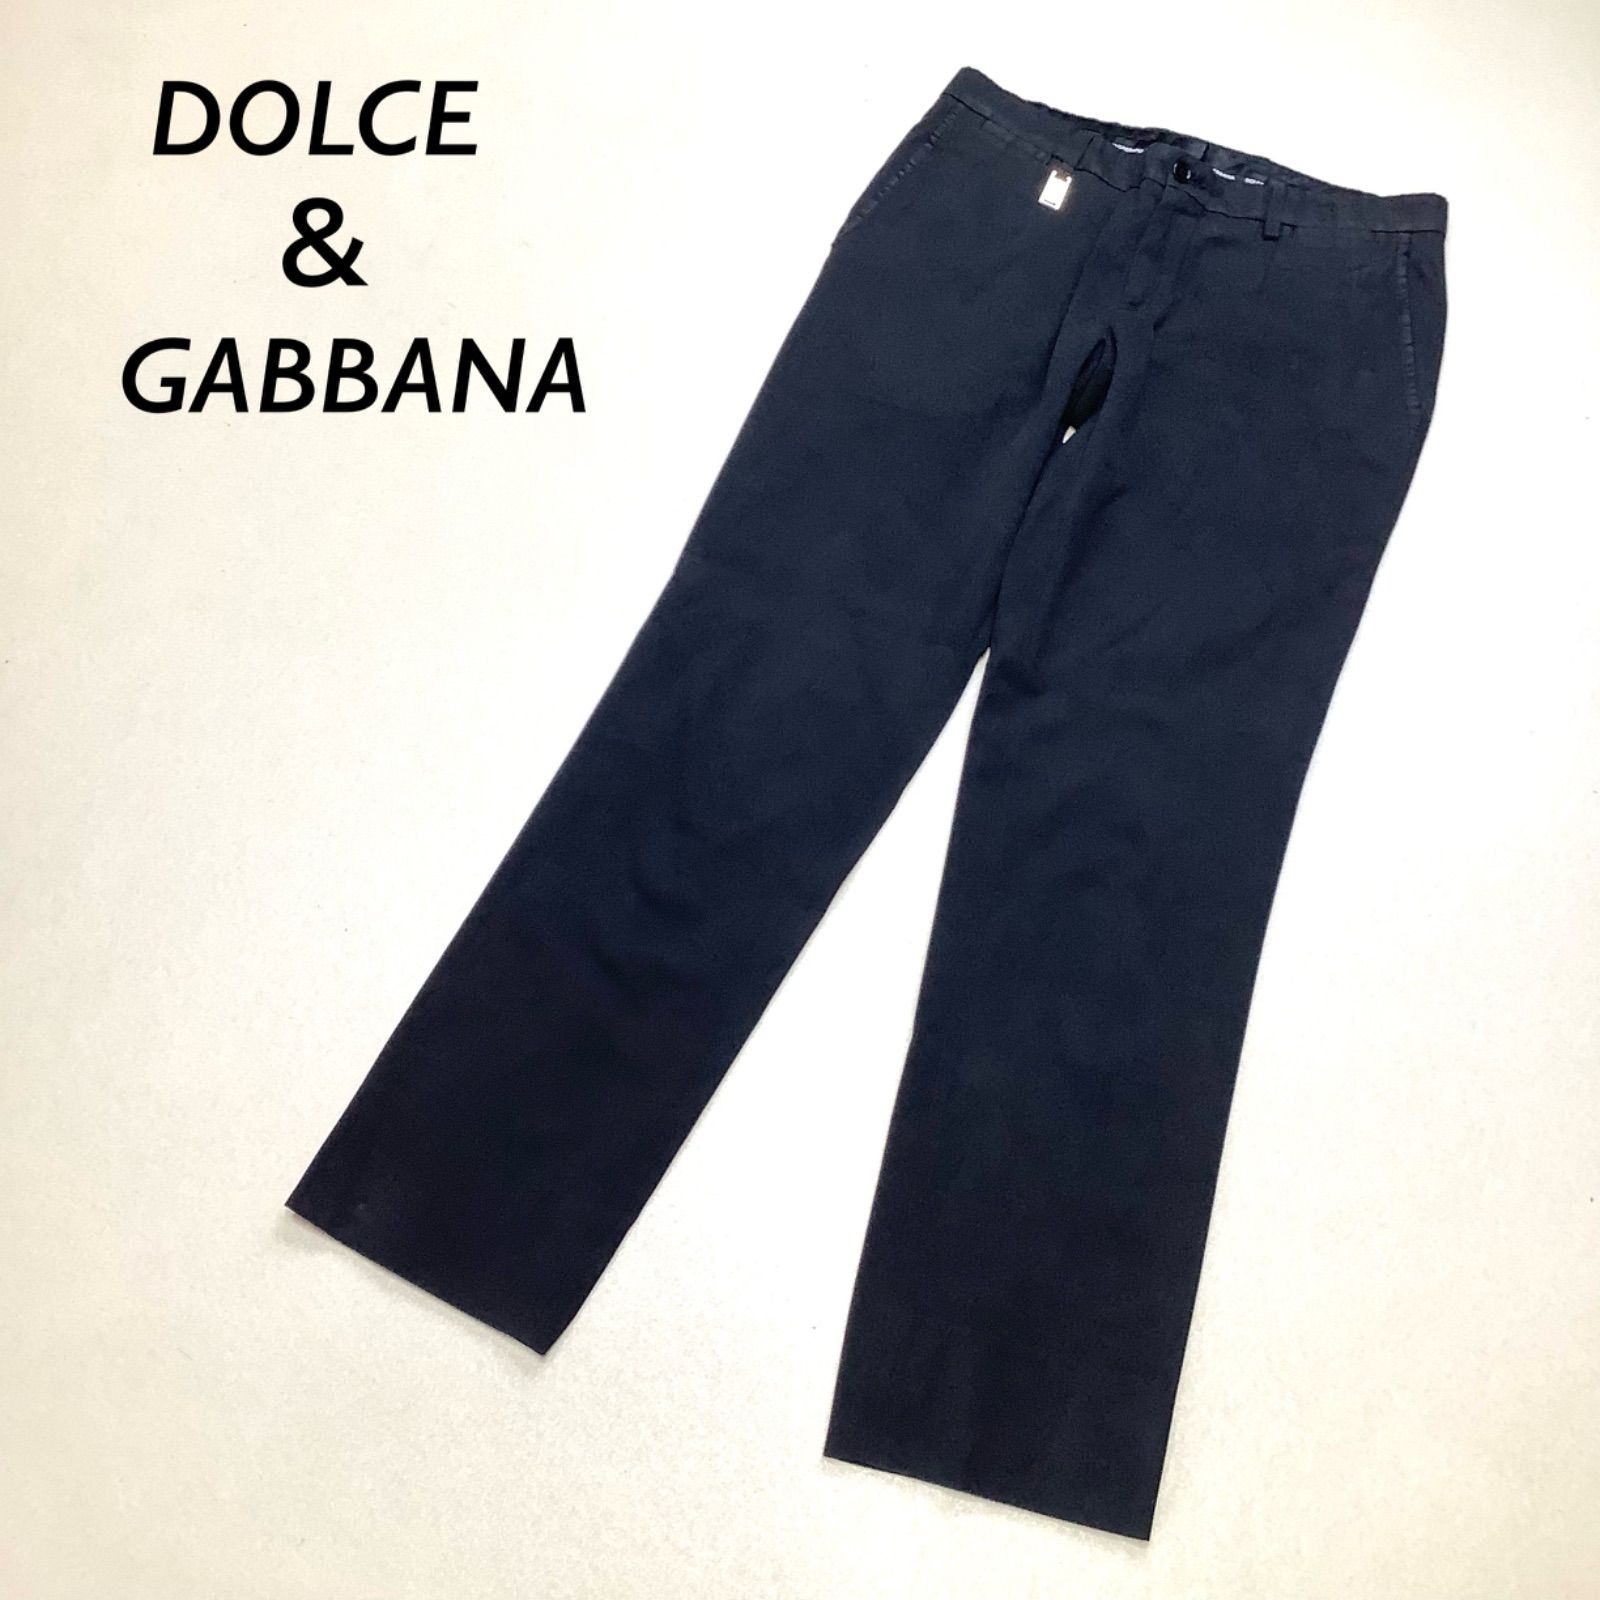 Dolce&Gabbana ドルチェアンドガッバーナ チノパン イタリア製 - パンツ